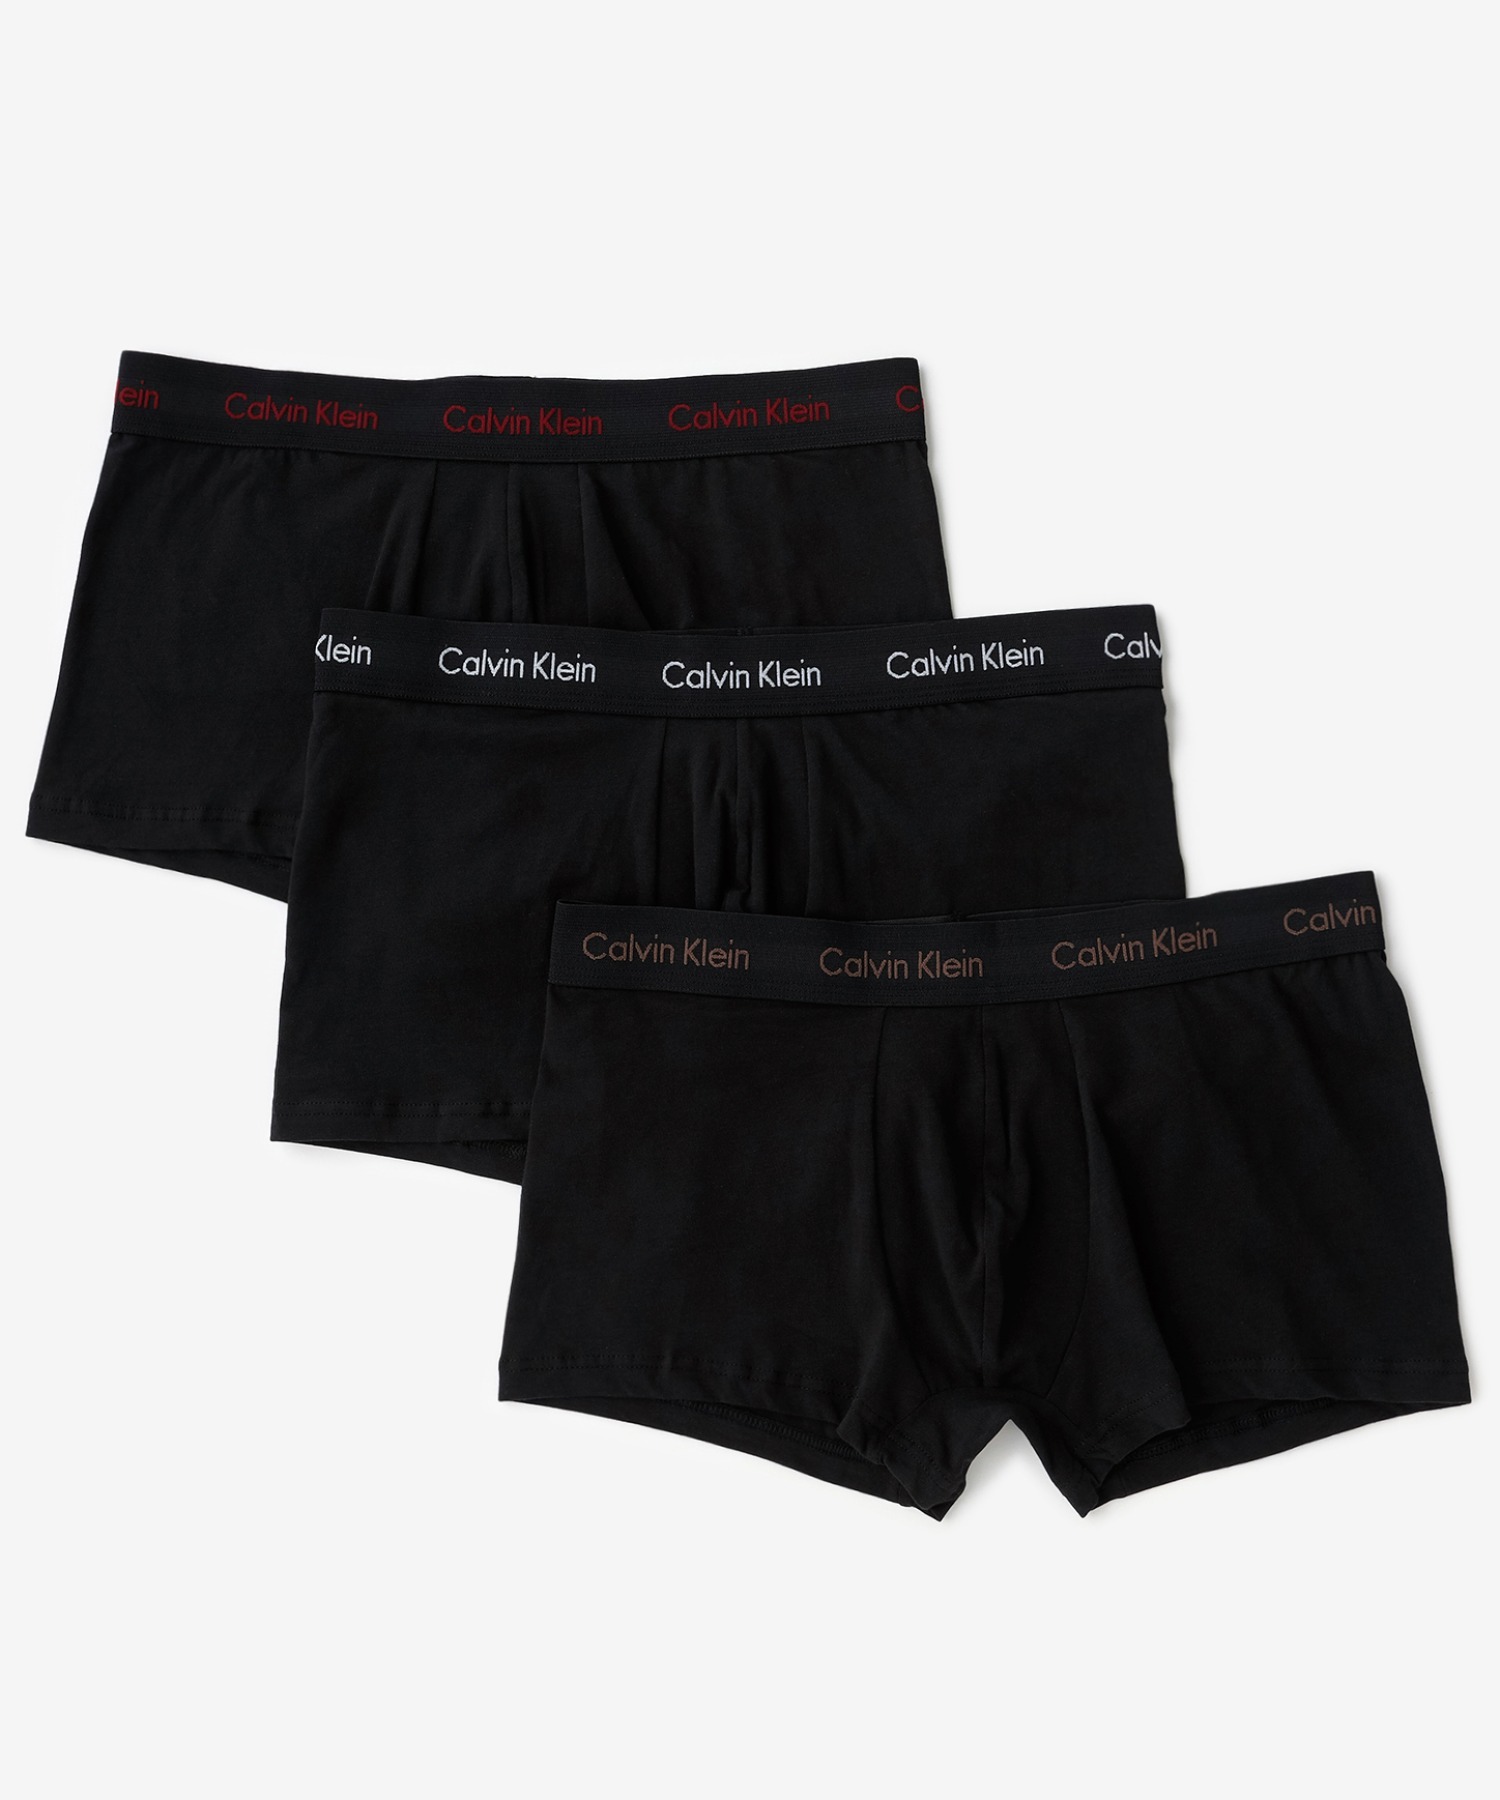 CALVIN KLEIN UNDERWEAR】コットン ストレッチ ボクサーパンツ 3 枚パック | カルバン・クライン(Calvin Klein)  | U2664 | ファッション通販 マルイウェブチャネル